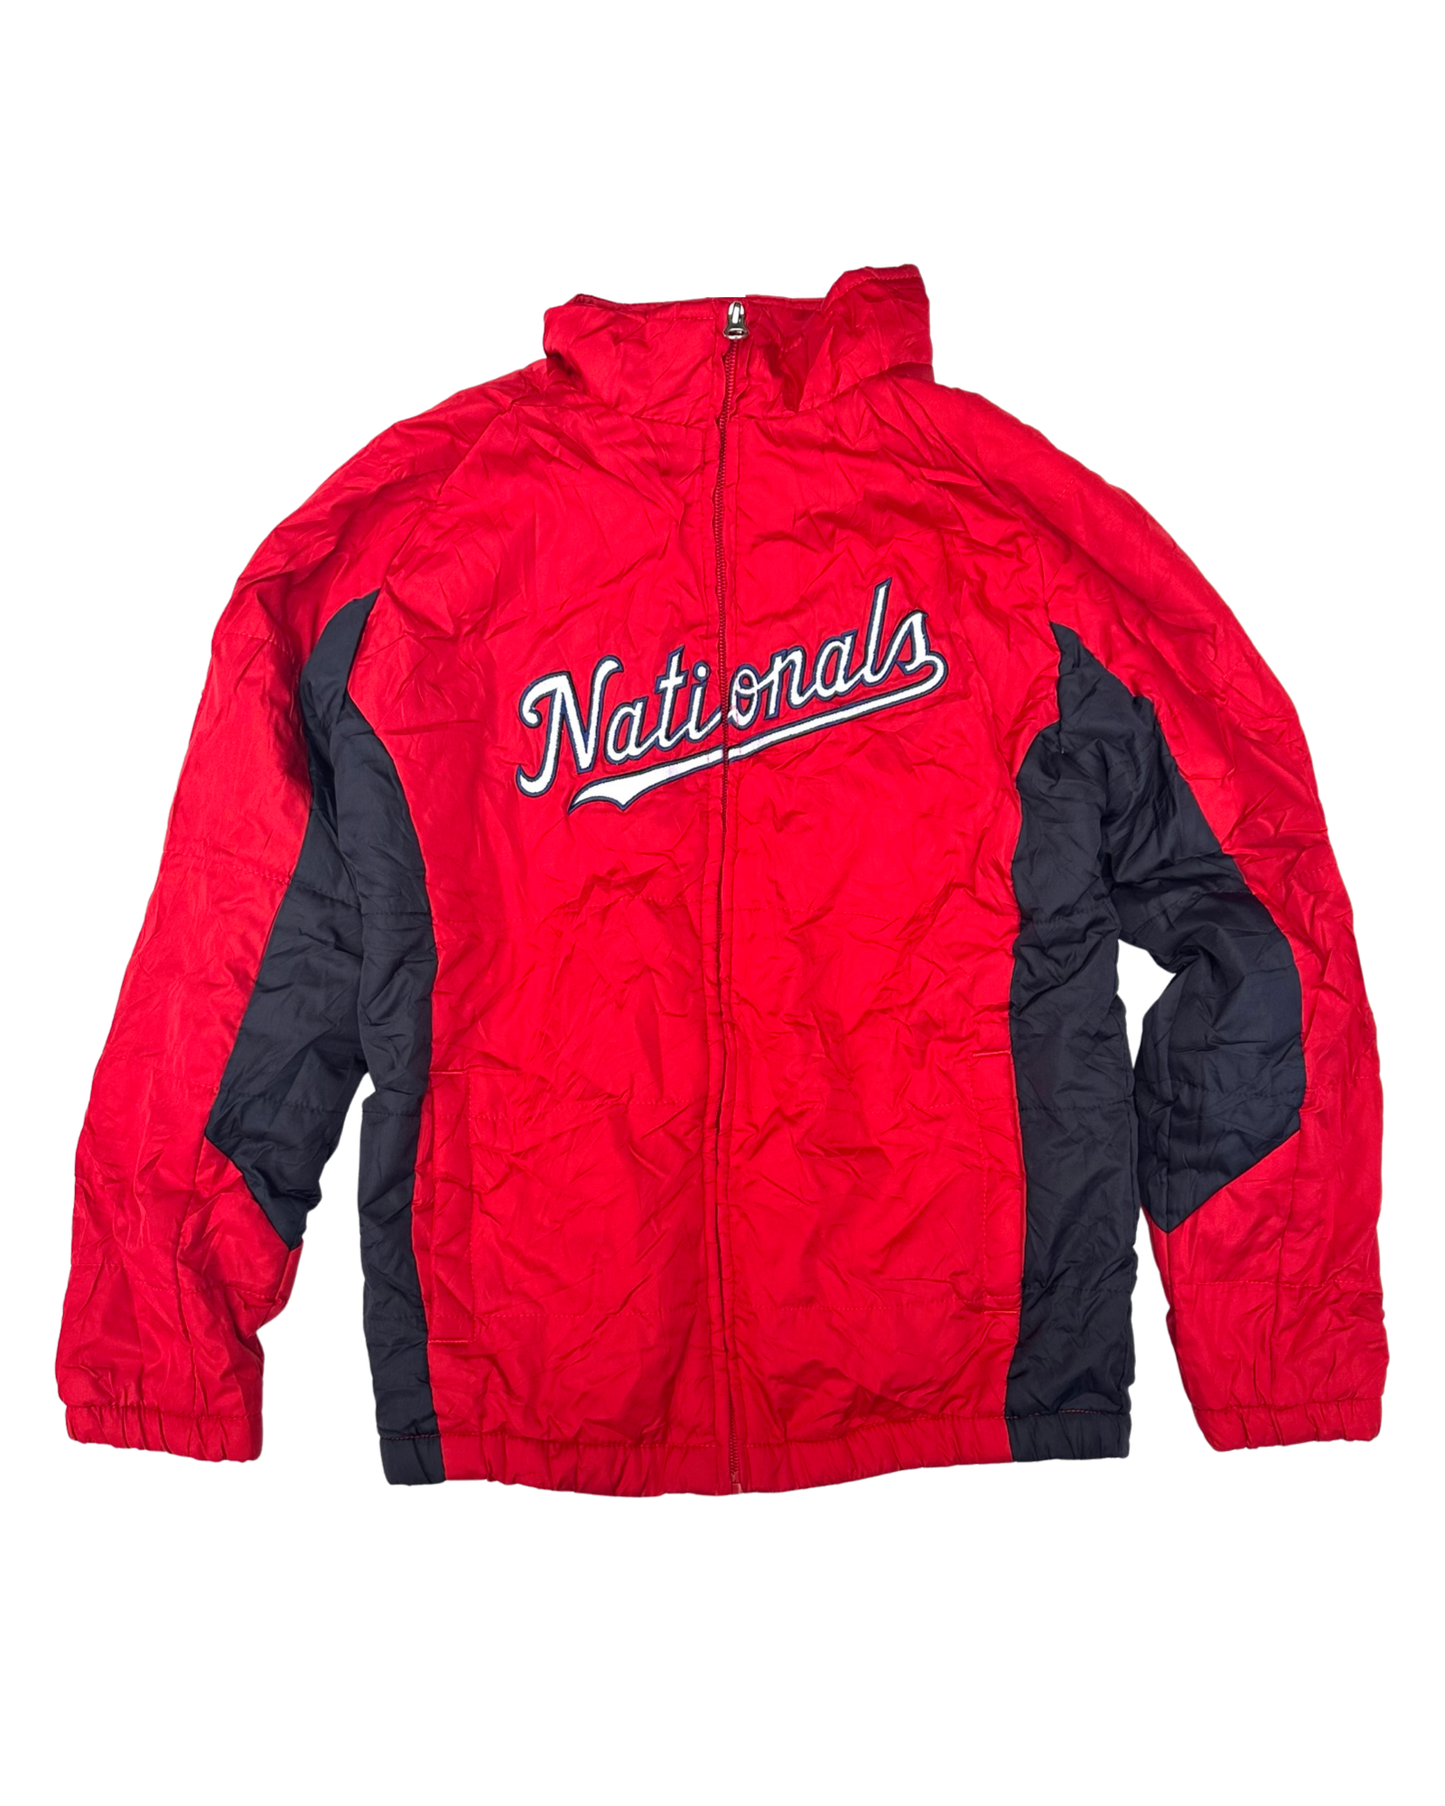 Vintage MLB Washington nationals padded jacket (7-8yrs)